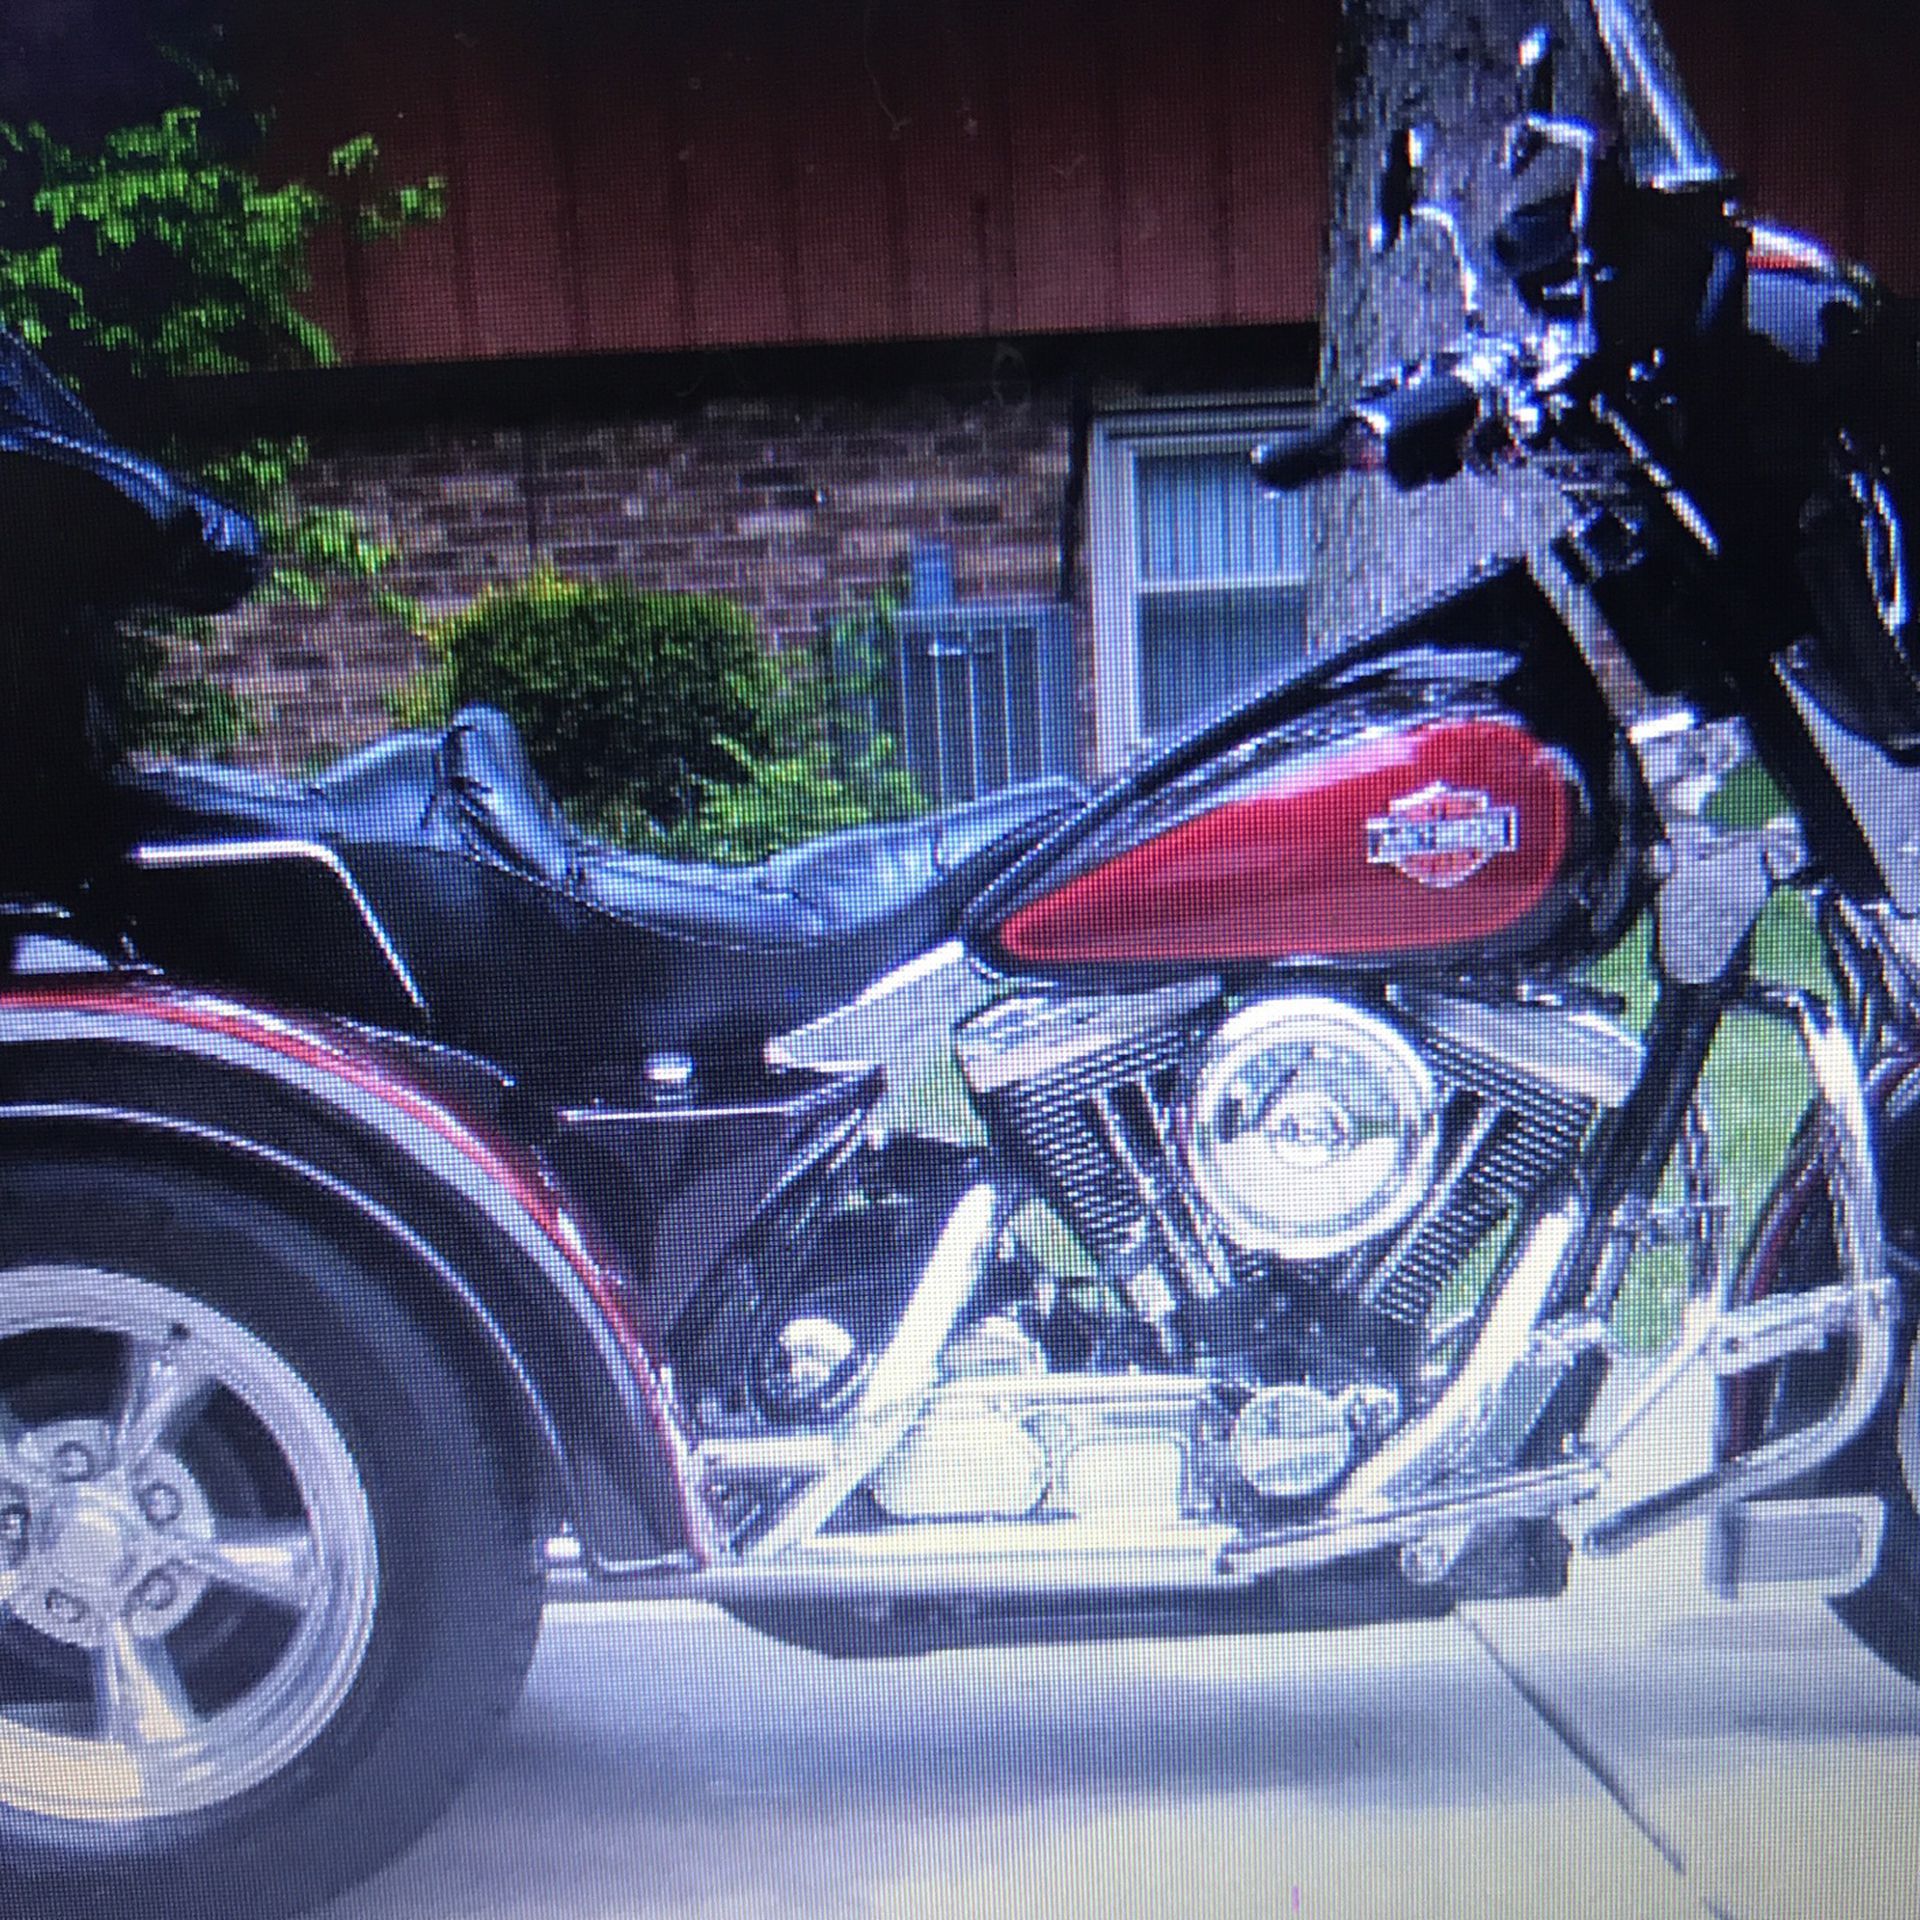 Photo Harley Davidson Trike 1988